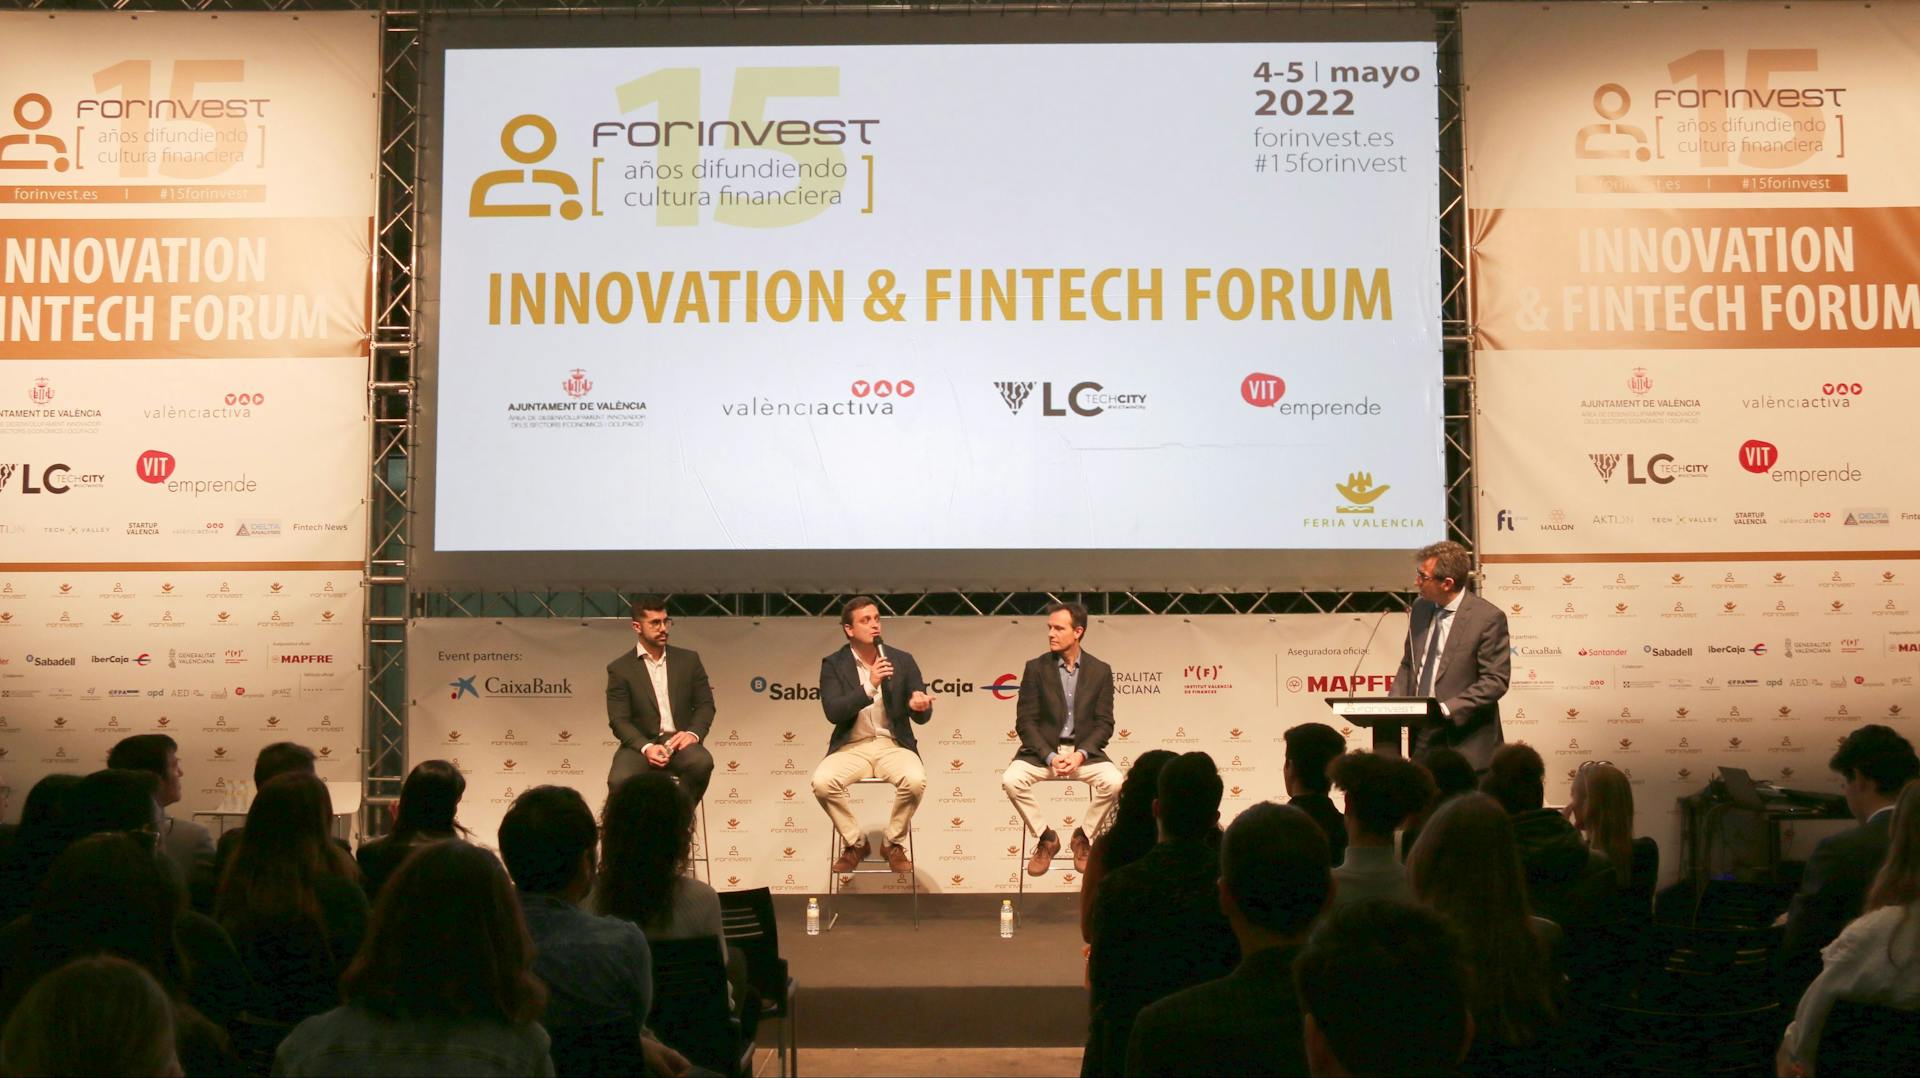 Exponentia participa en el Innovation & Fintech Forum de Forinvest 2022